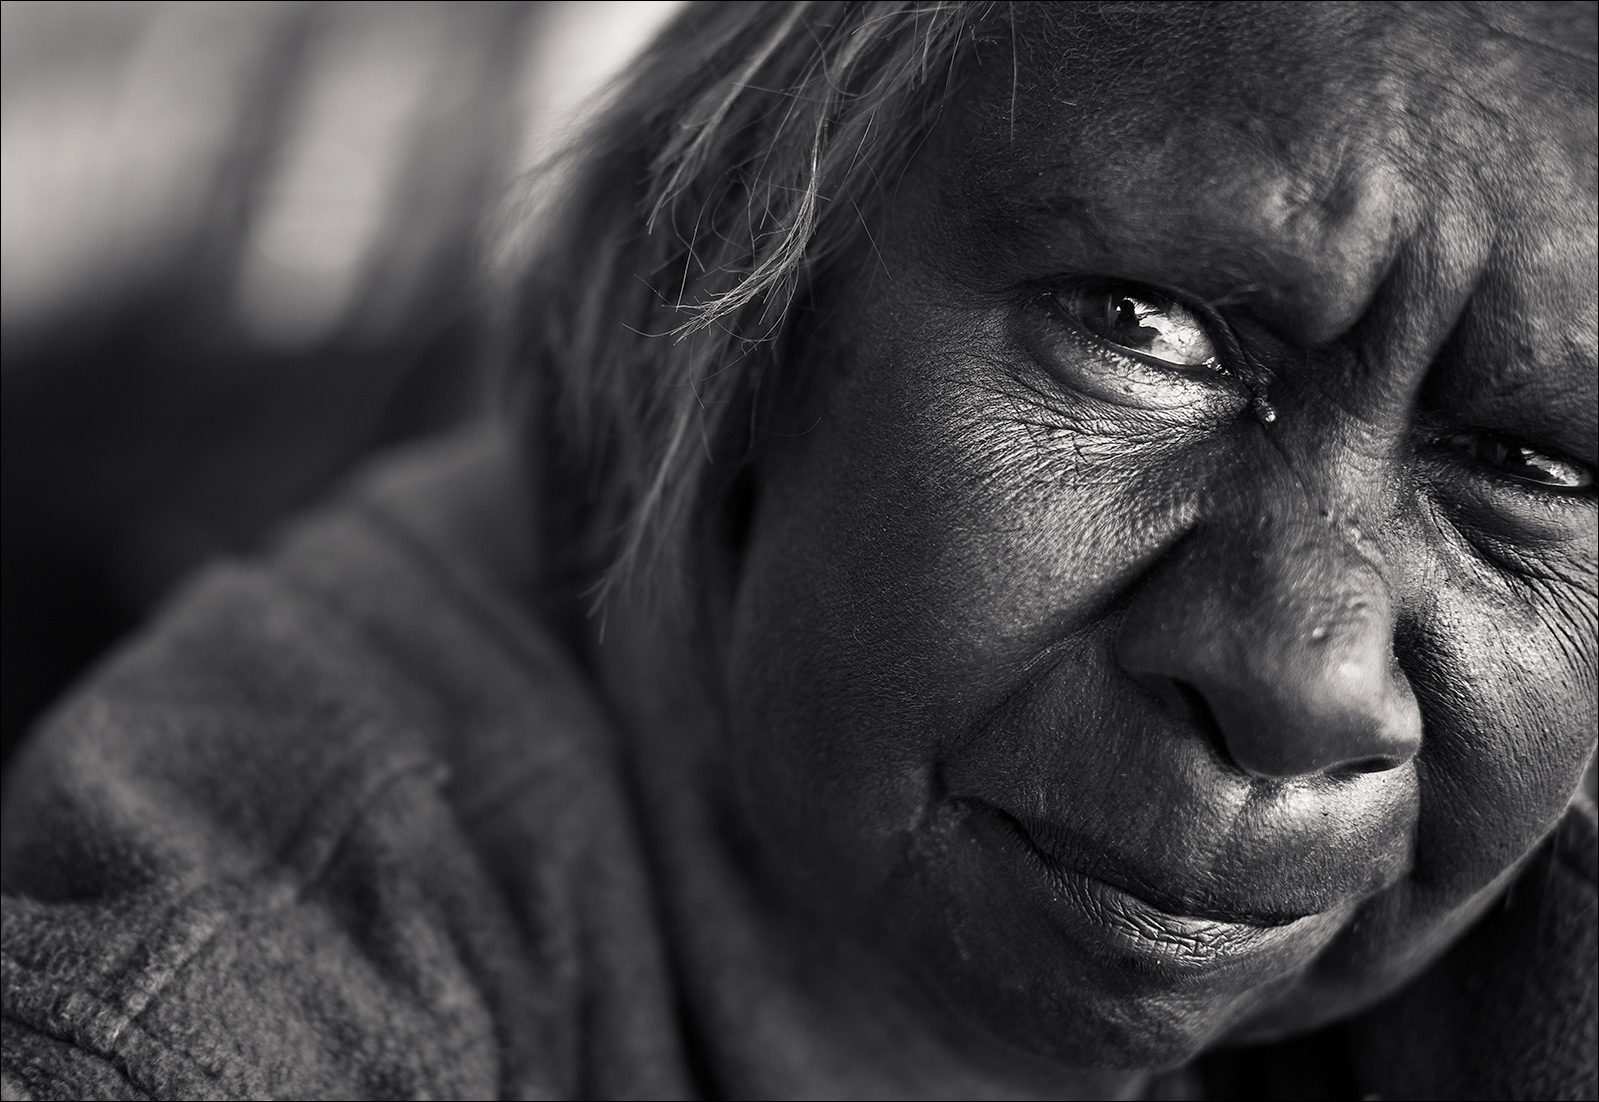 Rachel, aborigine, portrait